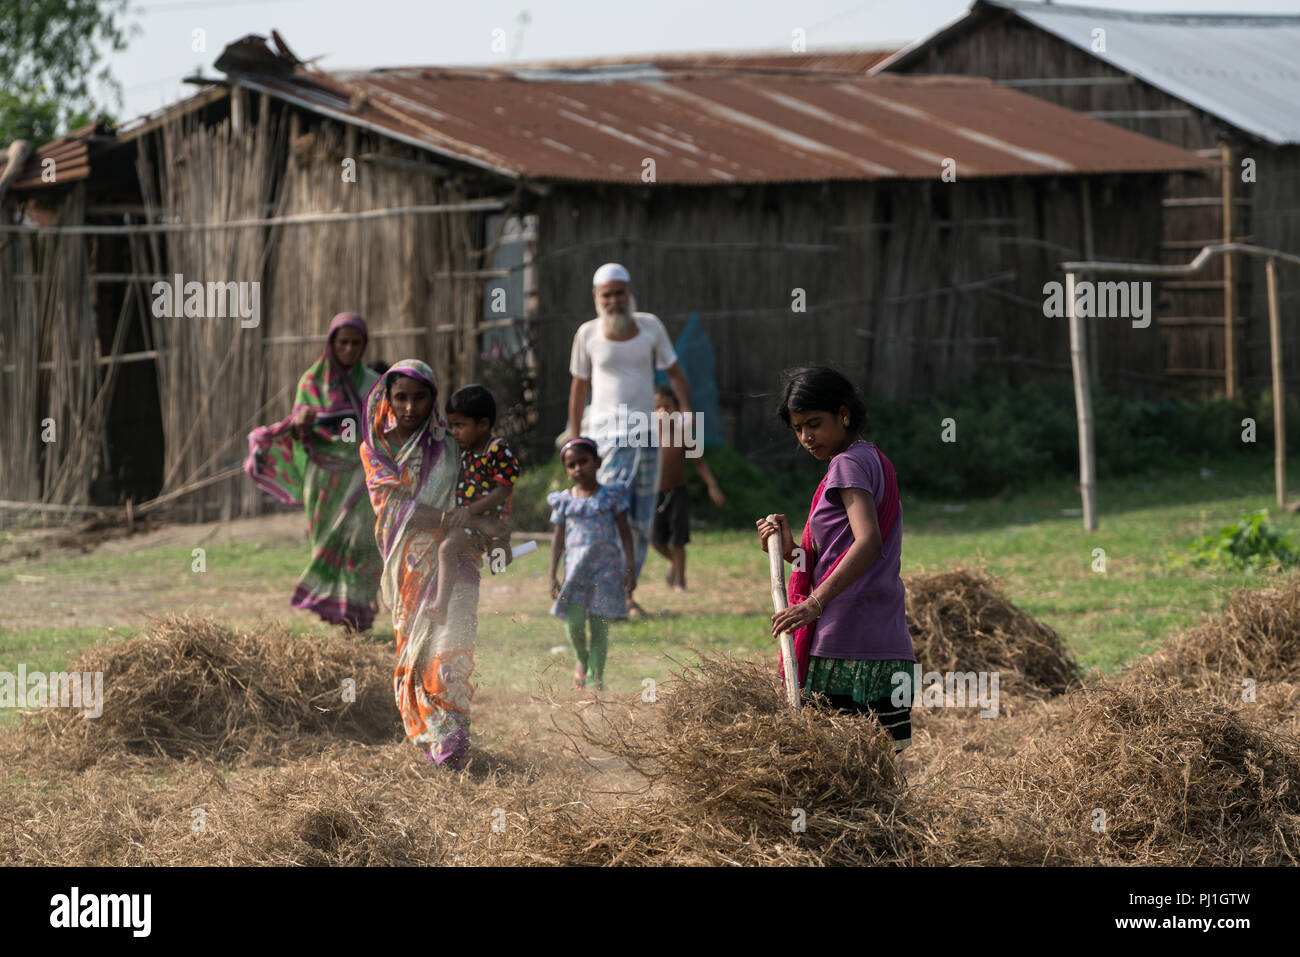 Le isole sul fiume Brahmaputra, localmente noto come 'chars', sono il la maggior parte delle aree sottosviluppate in India del nord-est stato di Assam. Il fiume 2.500 isole situate lungo la quasi 900km del tratto di fiume mighty sono la casa di alcune 2,5 milioni di persone, quasi il 80 per cento dei quali sono poveri, con scarso accesso ai servizi sanitari di base e servizi di istruzione. I caratteri hanno uno dei più alti di mortalità infantile e materna tariffe in stato. In assenza del servizio medico di emergenza, si impiegano da 4 a 6 ore per un paziente da un char per raggiungere un quartiere in ospedale per il trattamento. Foto Stock